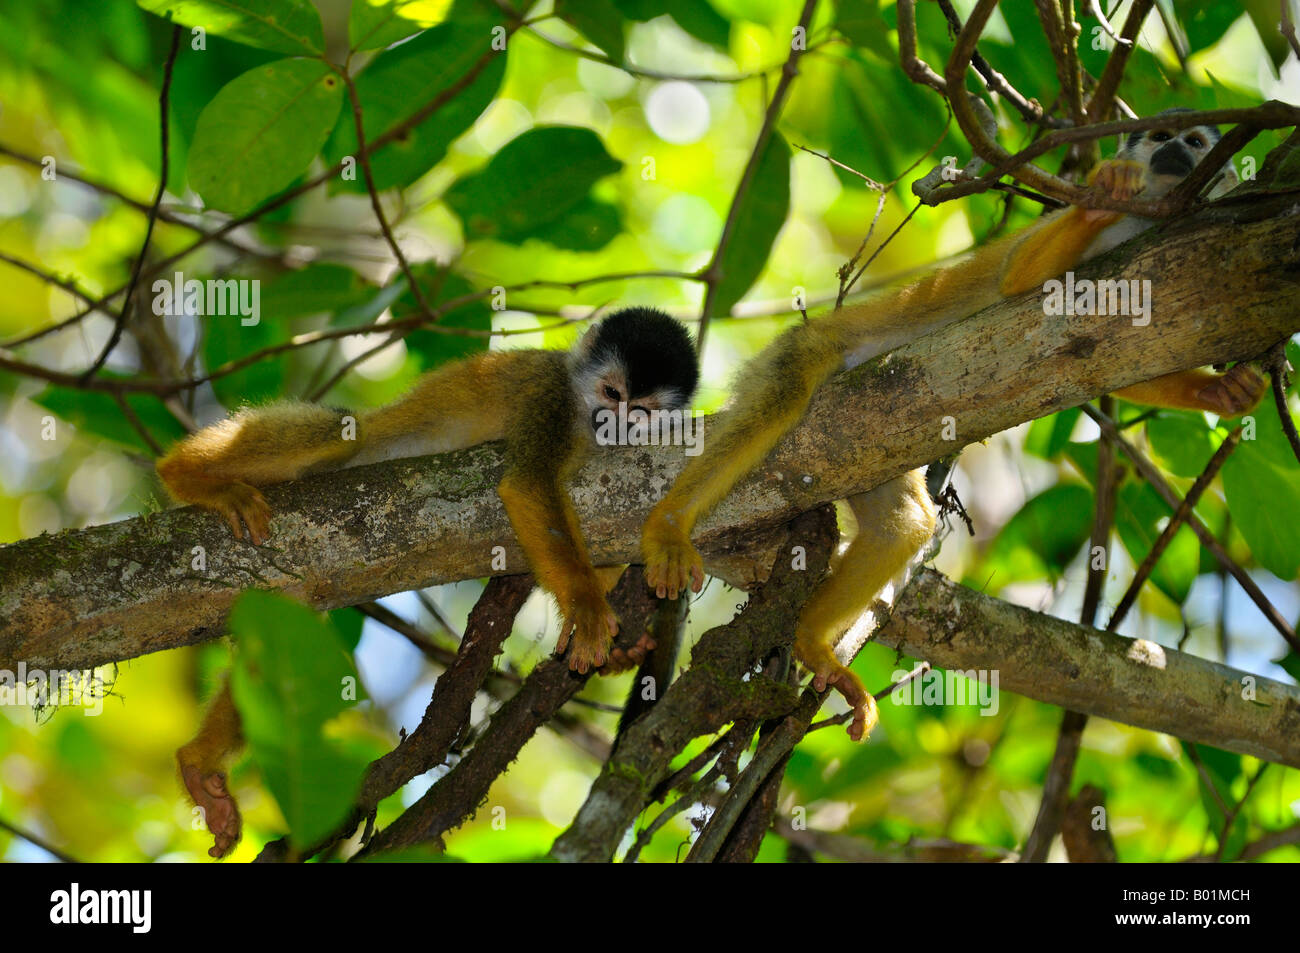 Les singes écureuils communs reposant sur une branche d'arbre, dans la forêt ombrophile de Karaté de la péninsule d'Osa au Costa Rica Banque D'Images